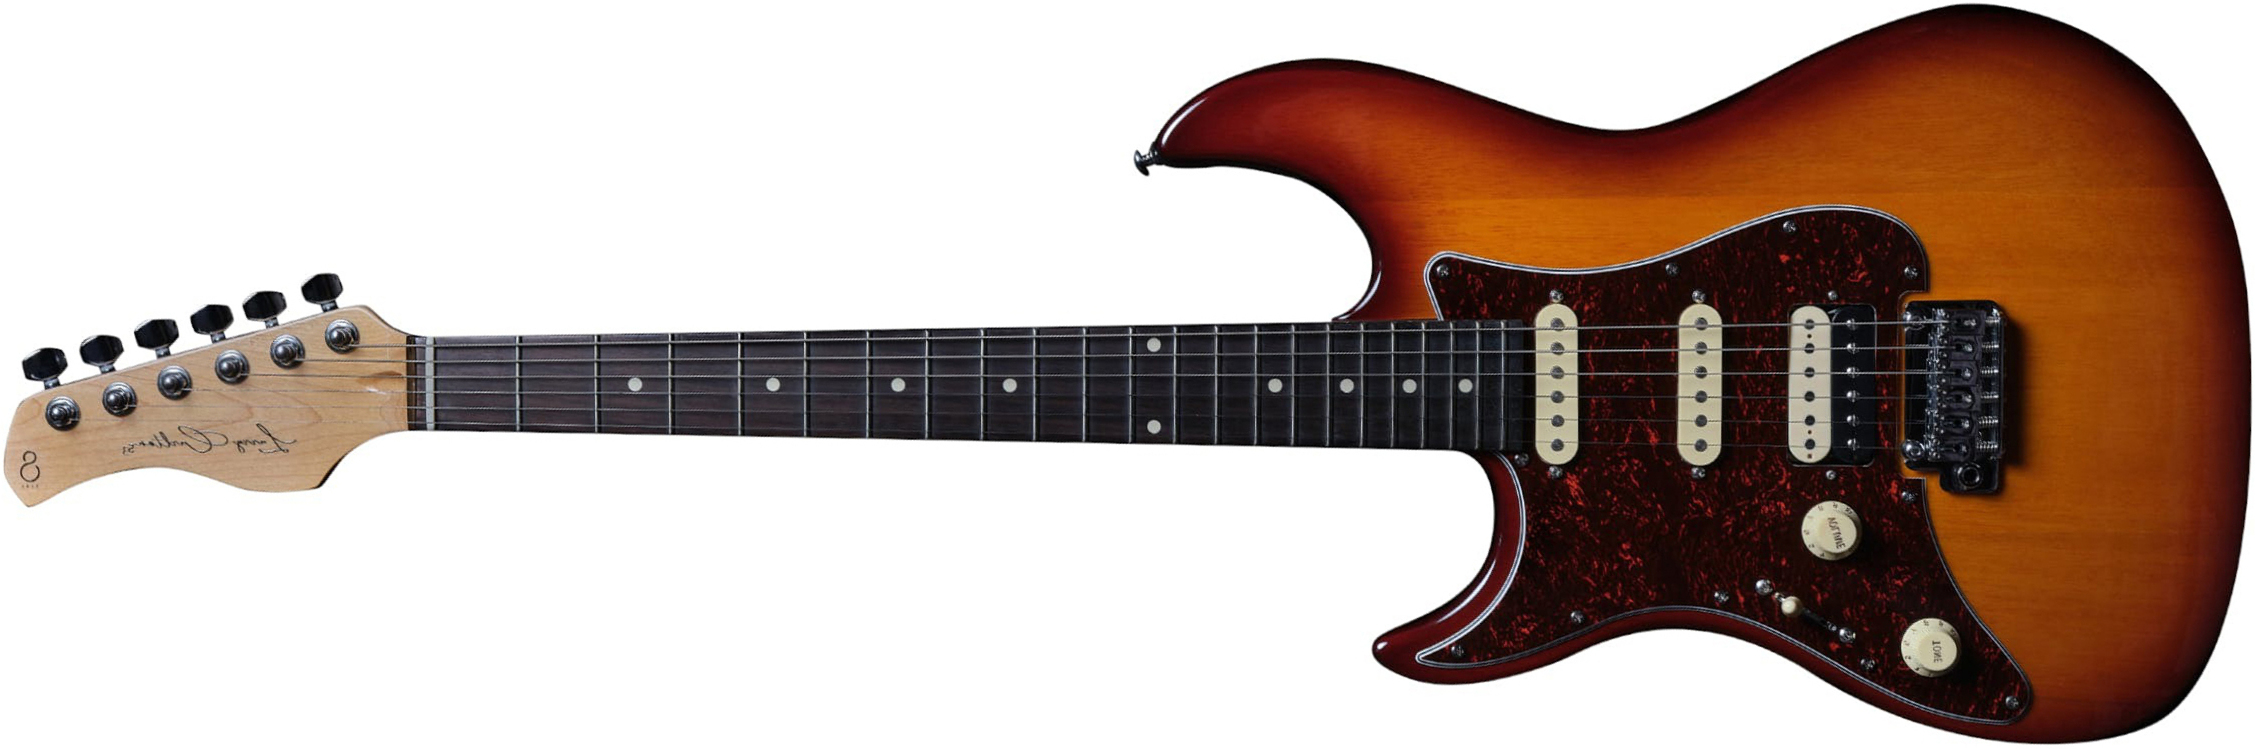 Sire Larry Carlton S3 Lh Signature Gaucher Hss Trem Rw - Tobacco Sunburst - Linkshandige elektrische gitaar - Main picture